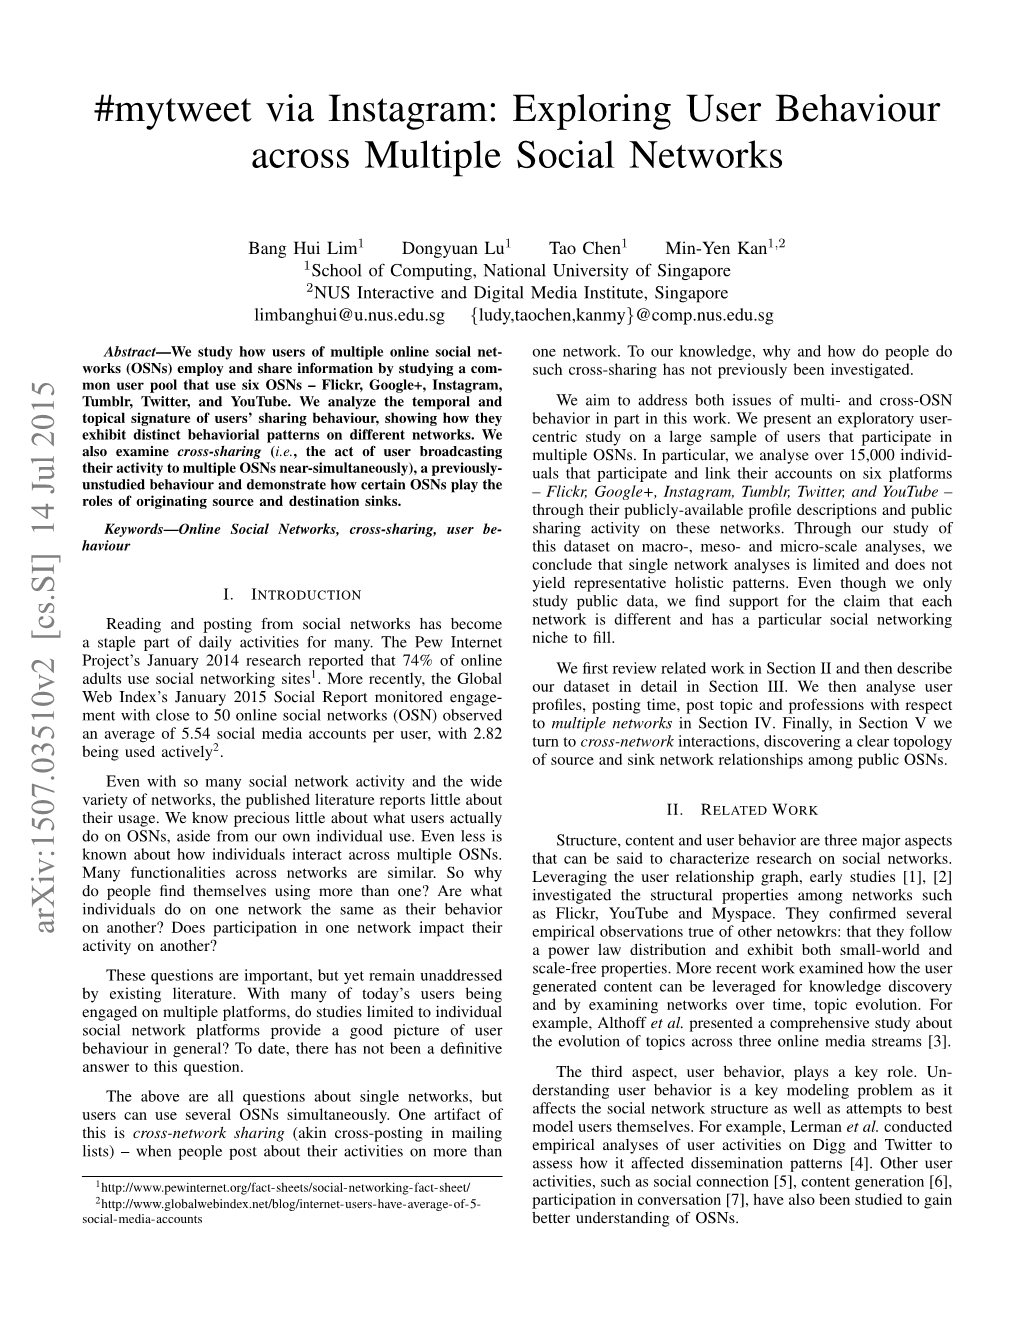 Exploring User Behaviour Across Multiple Social Networks